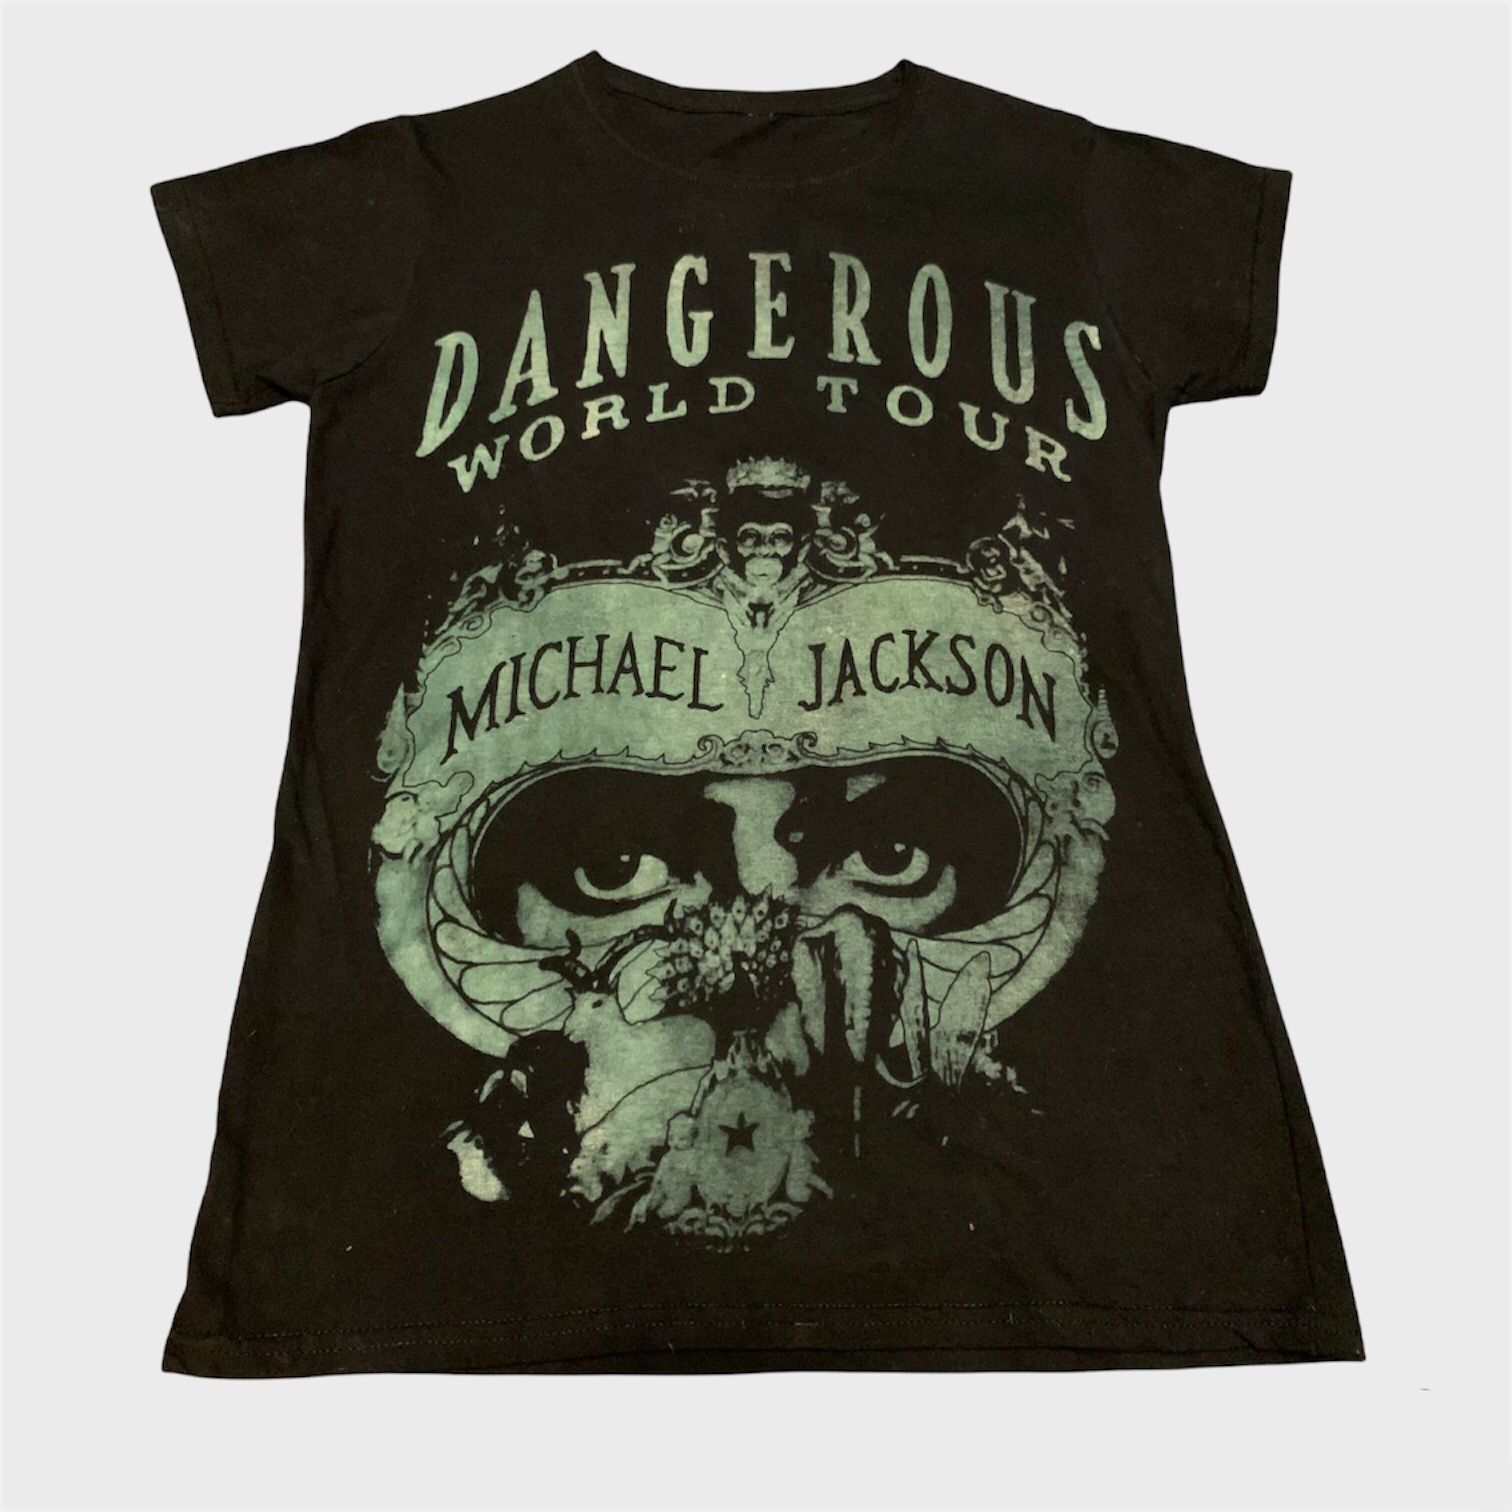 Dangerous World Tour T-Shirt – Michael Jackson Market